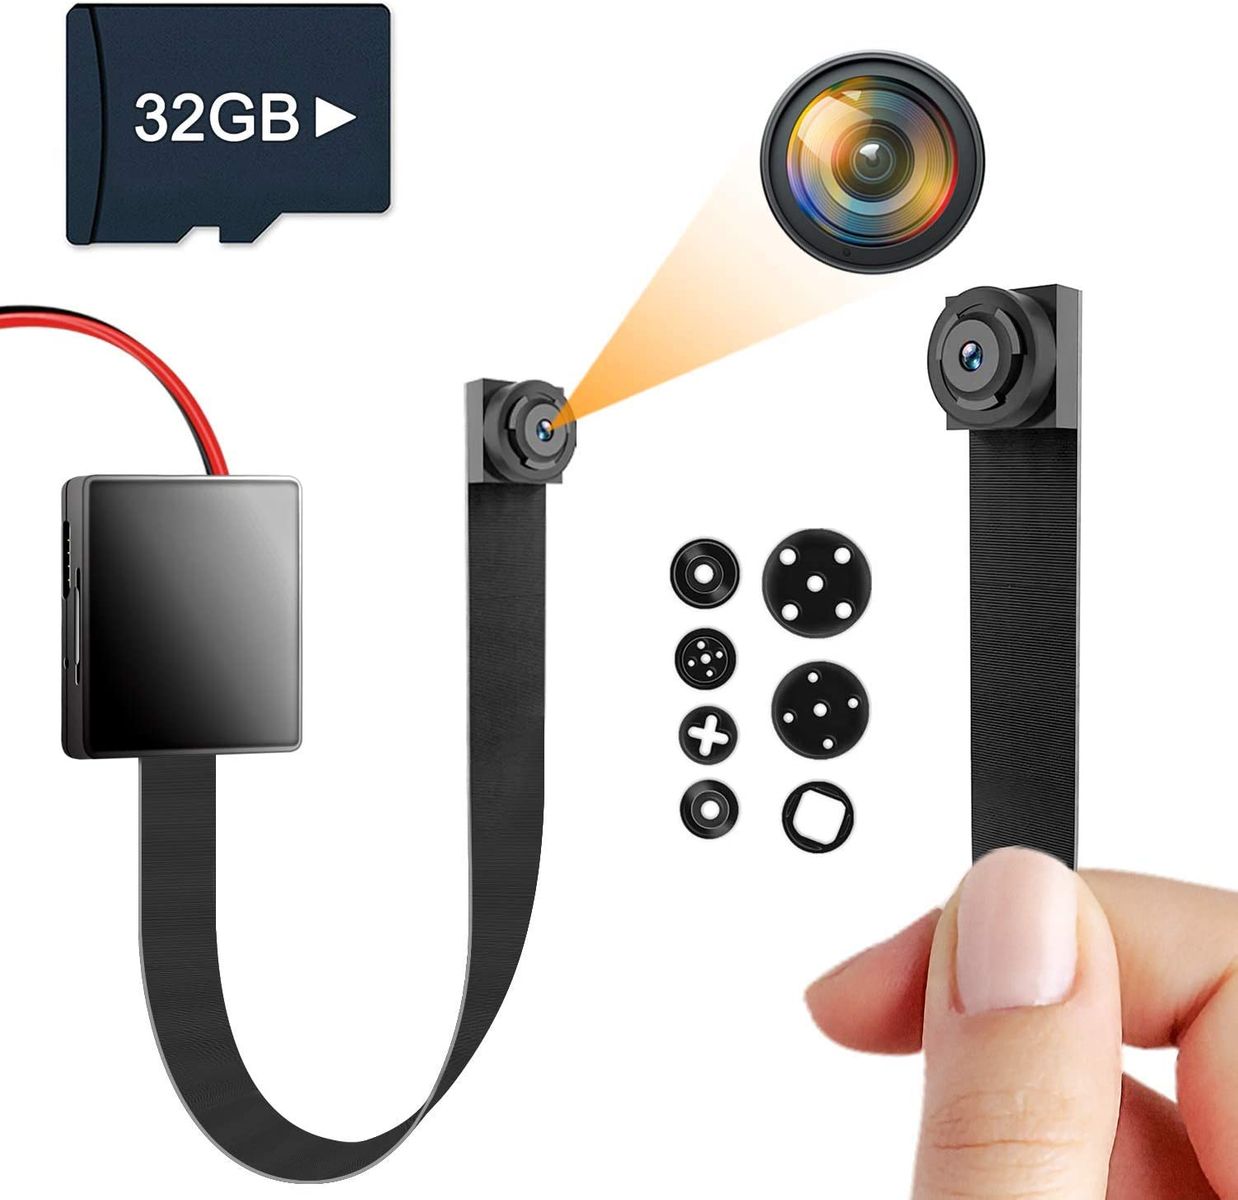 Igzyz Mini Camera, Surveillance Camera 1080P Portable DIY Camera 11 Hours Battery Life Home Surveillance Nanny Cameras Motion Detection (32GB SD Card Included)